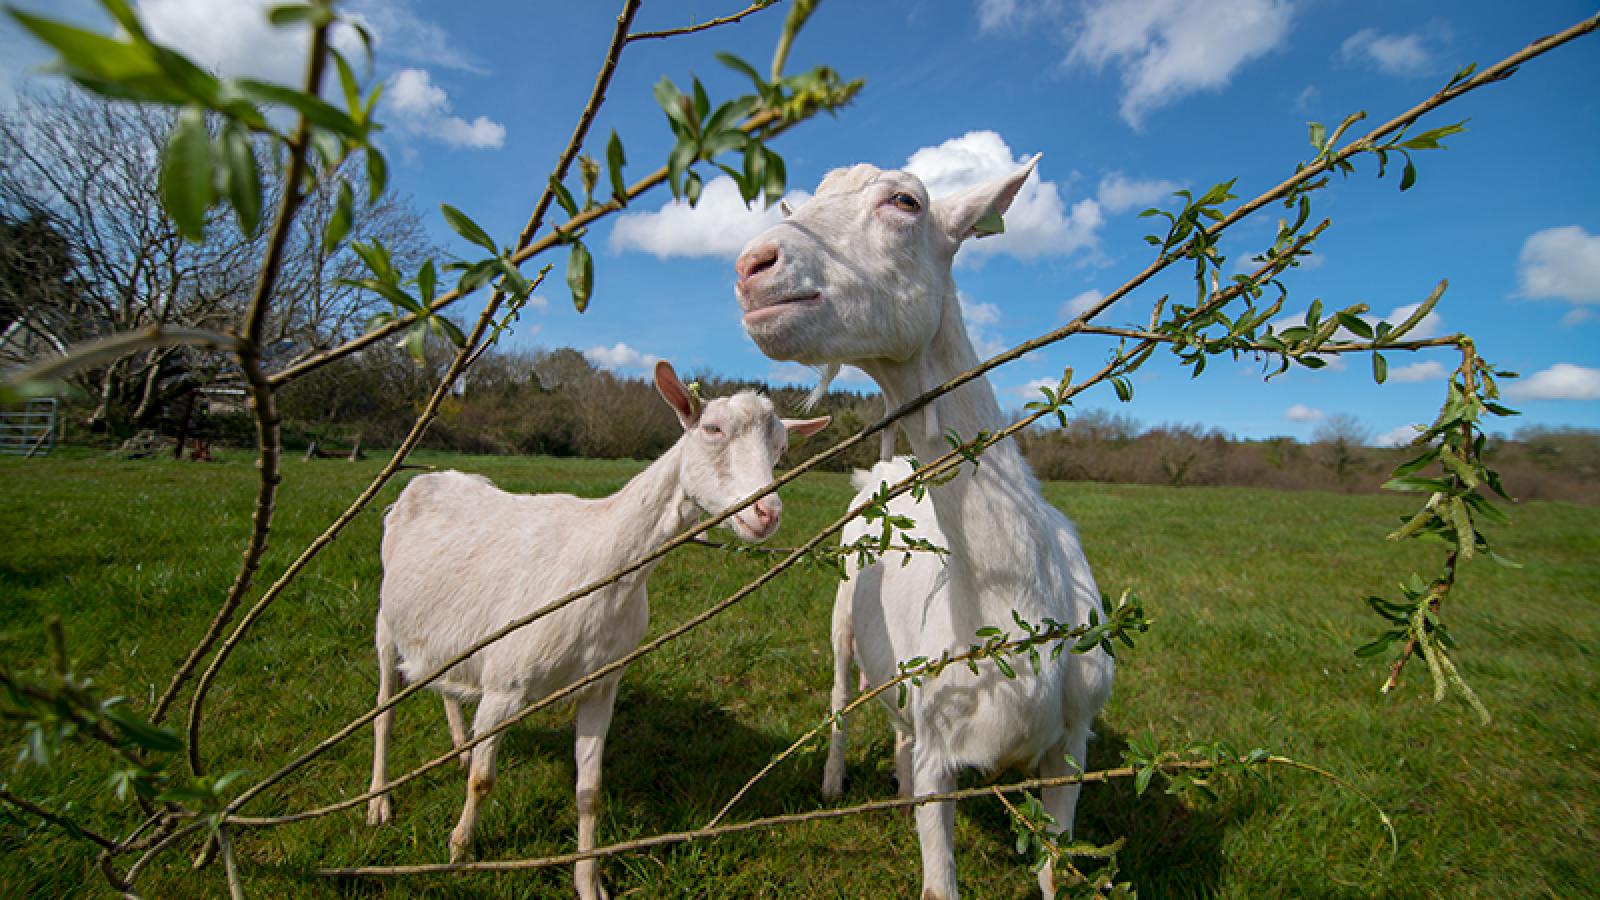 Goats grazing in an open green field